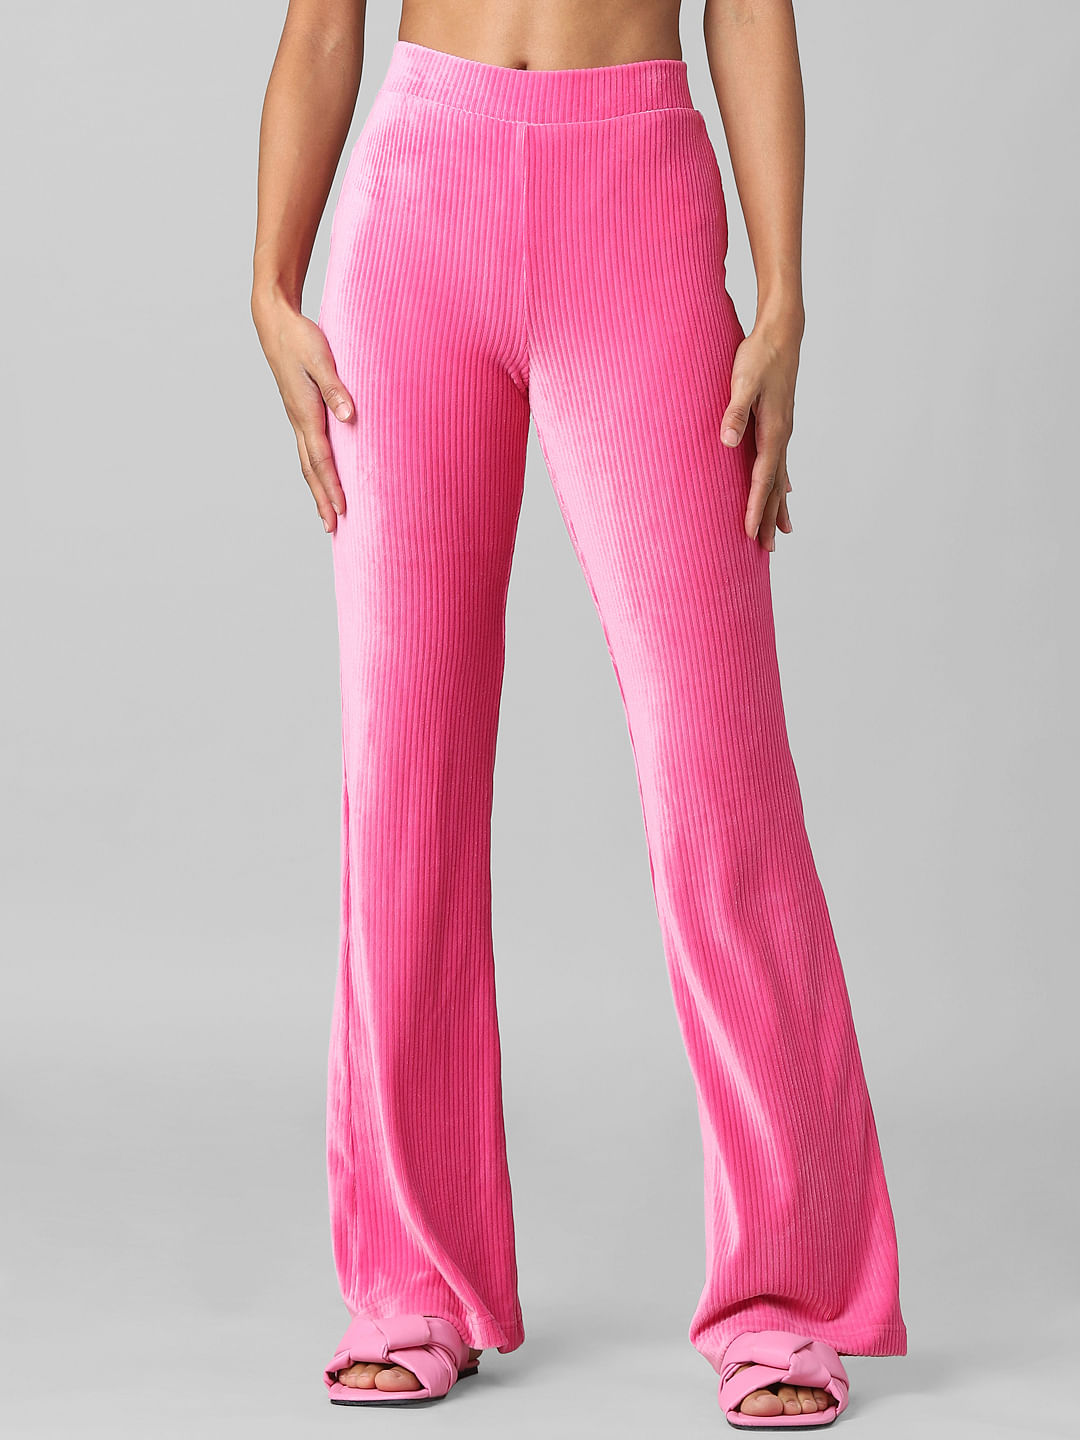 Buy Pink Corduroy Pants Online in India  Etsy